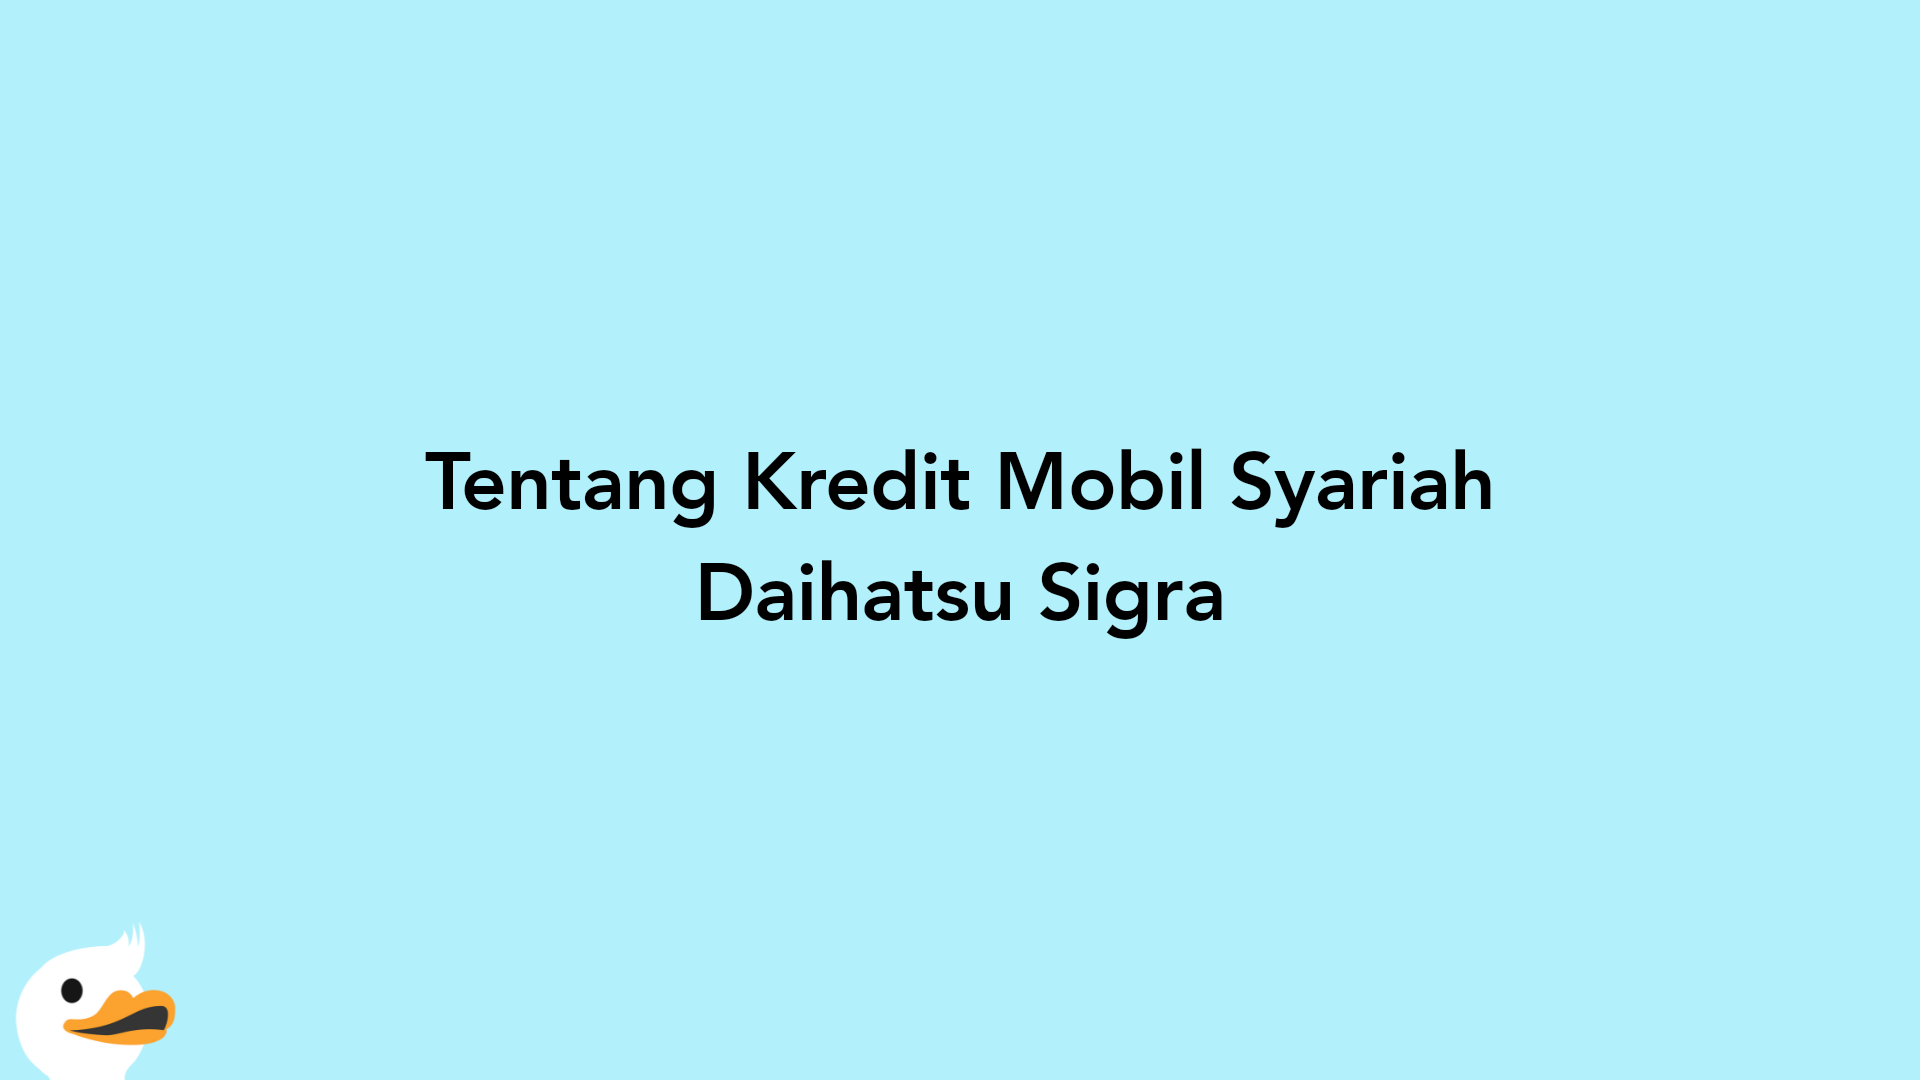 Tentang Kredit Mobil Syariah Daihatsu Sigra